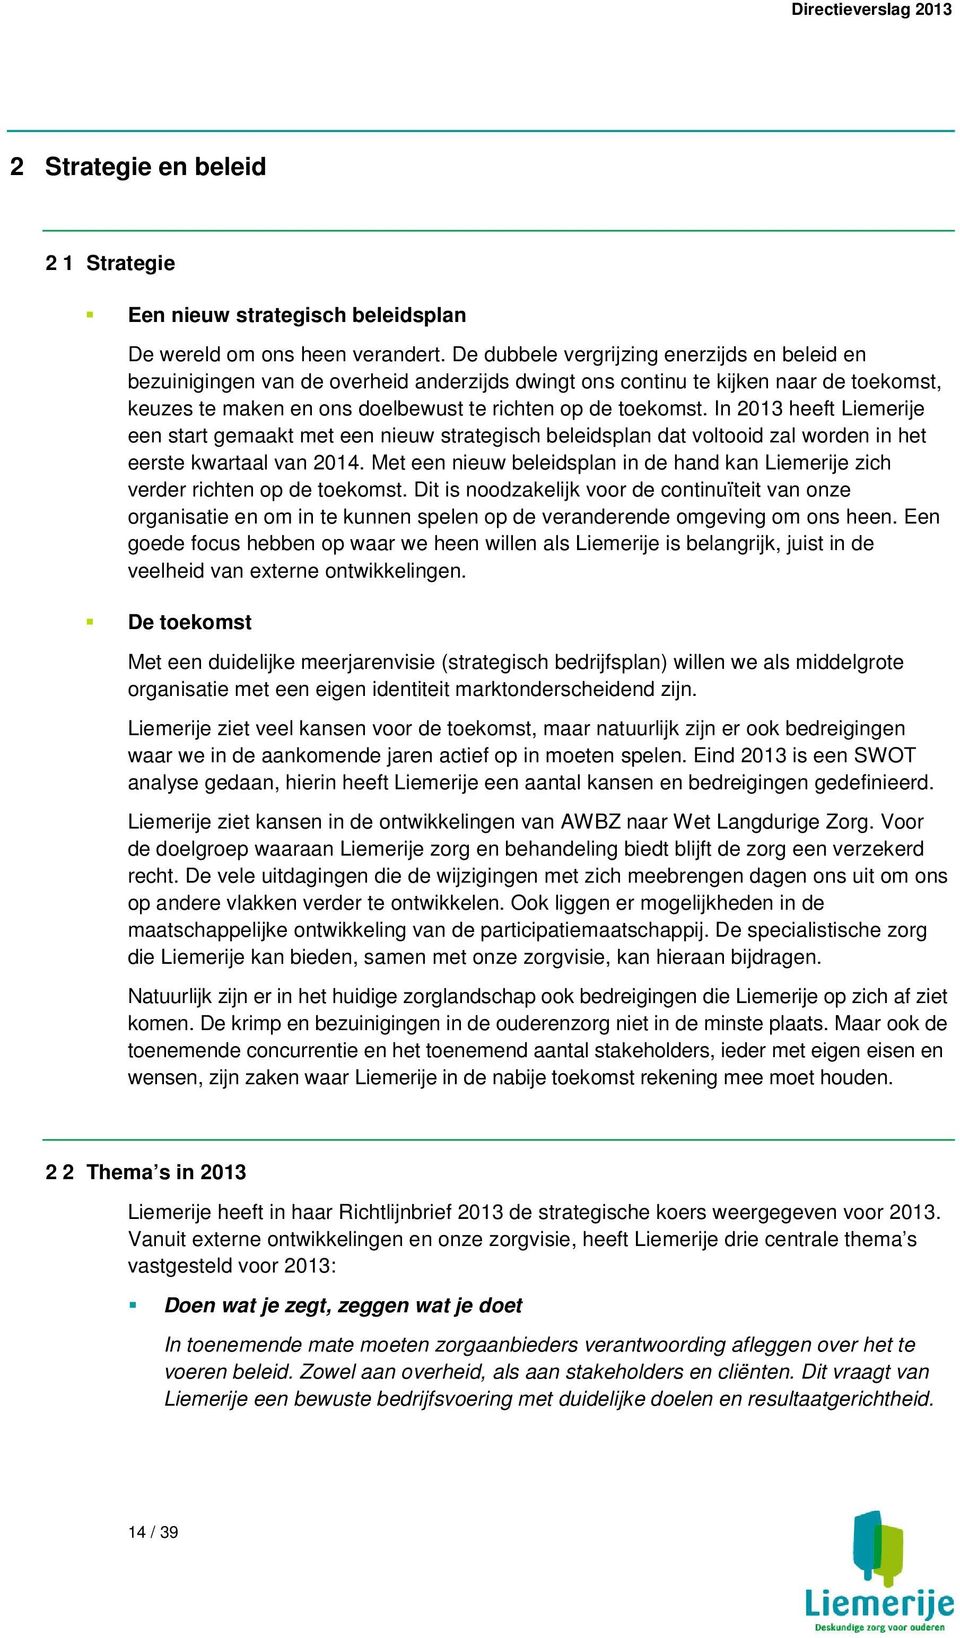 In 2013 heeft Liemerije een start gemaakt met een nieuw strategisch beleidsplan dat voltooid zal worden in het eerste kwartaal van 2014.